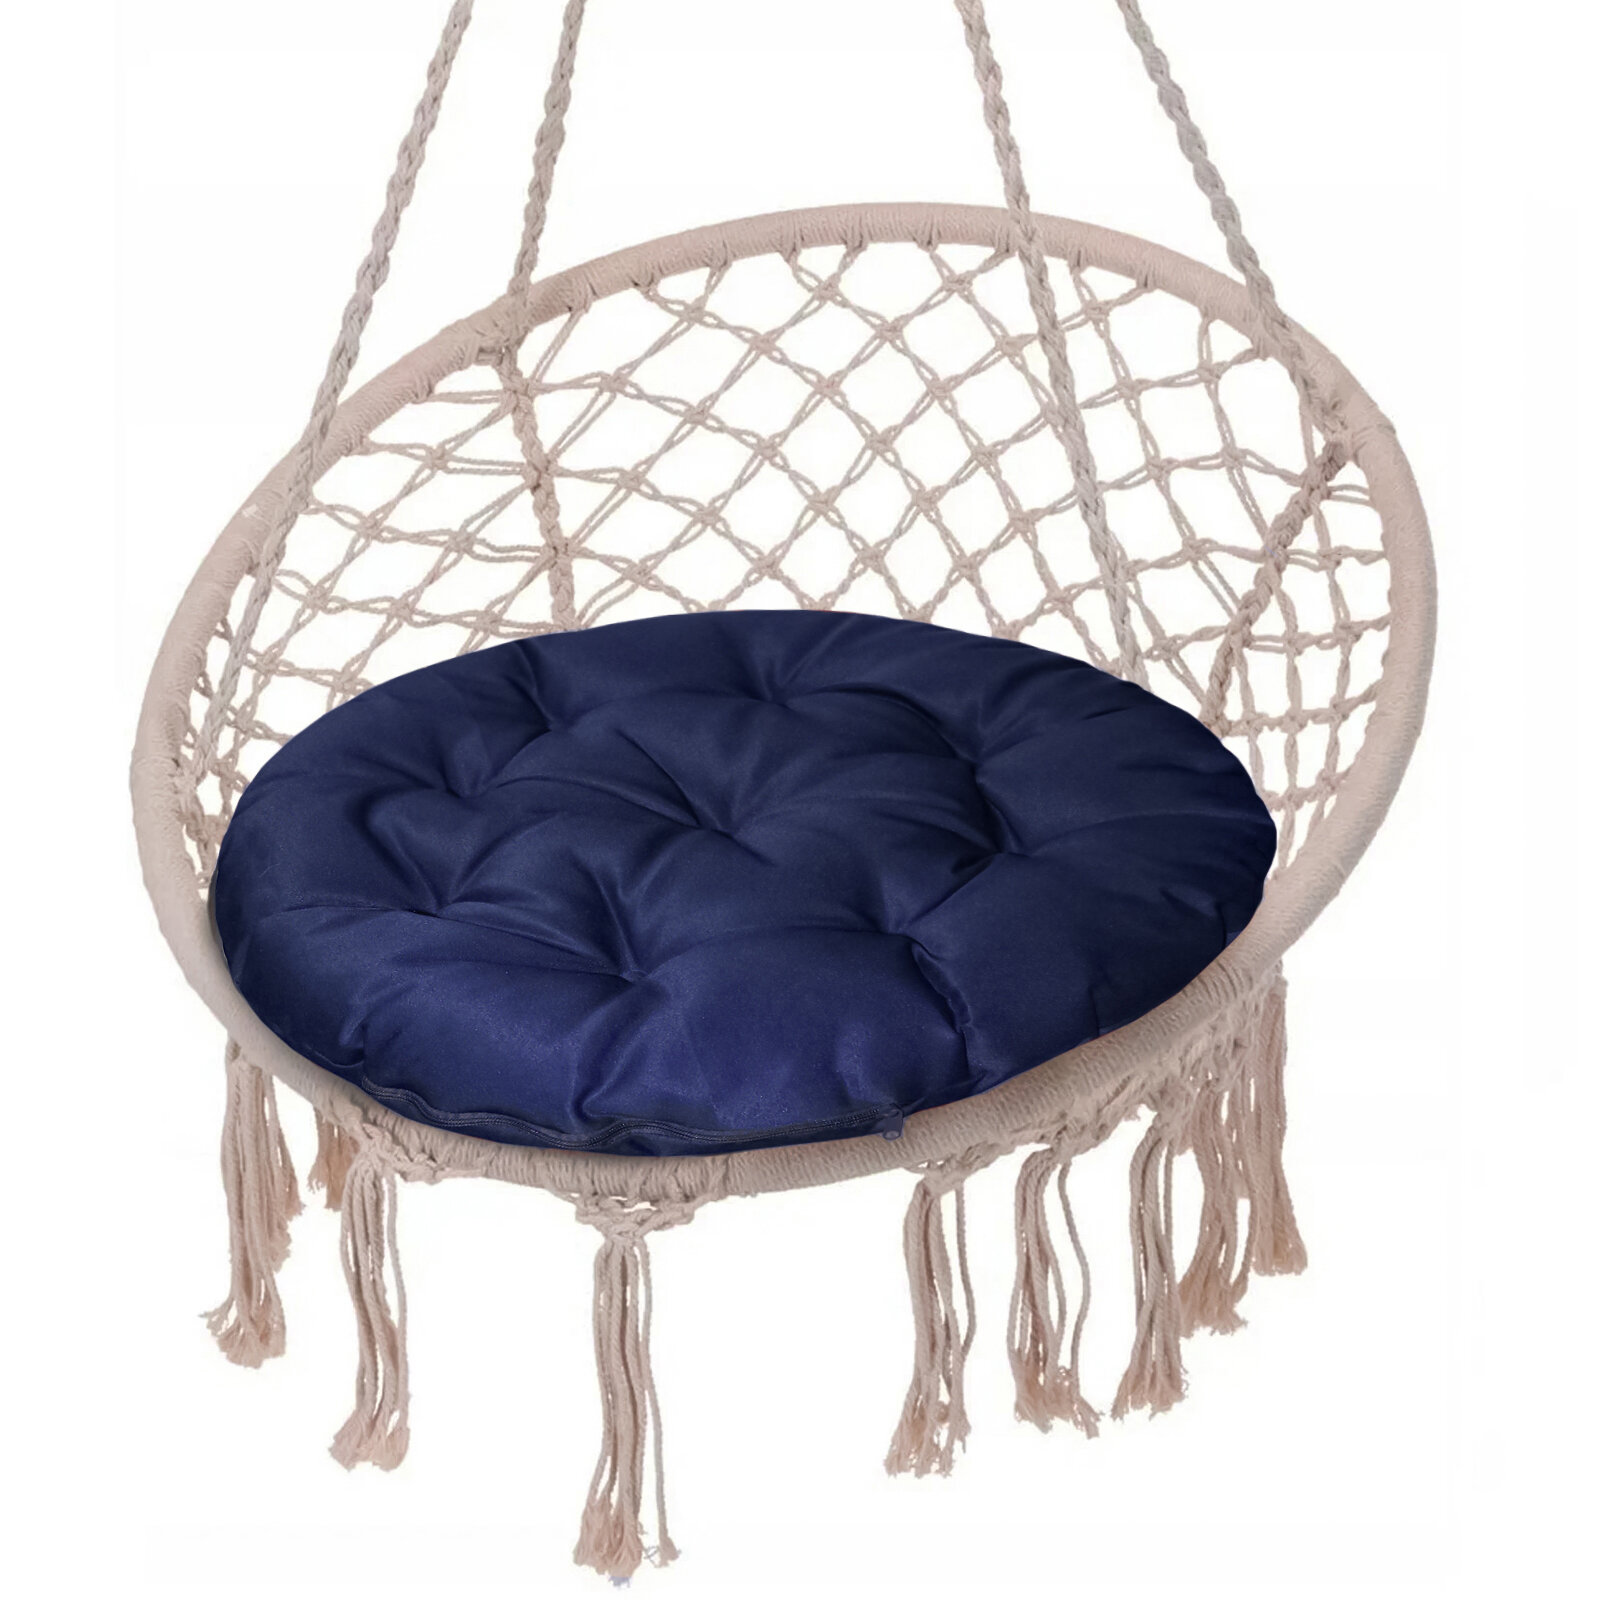 Подушка круглая на кресло непромокаемая D60 см, т-синий, файбер, грета хл20%, пэ80%